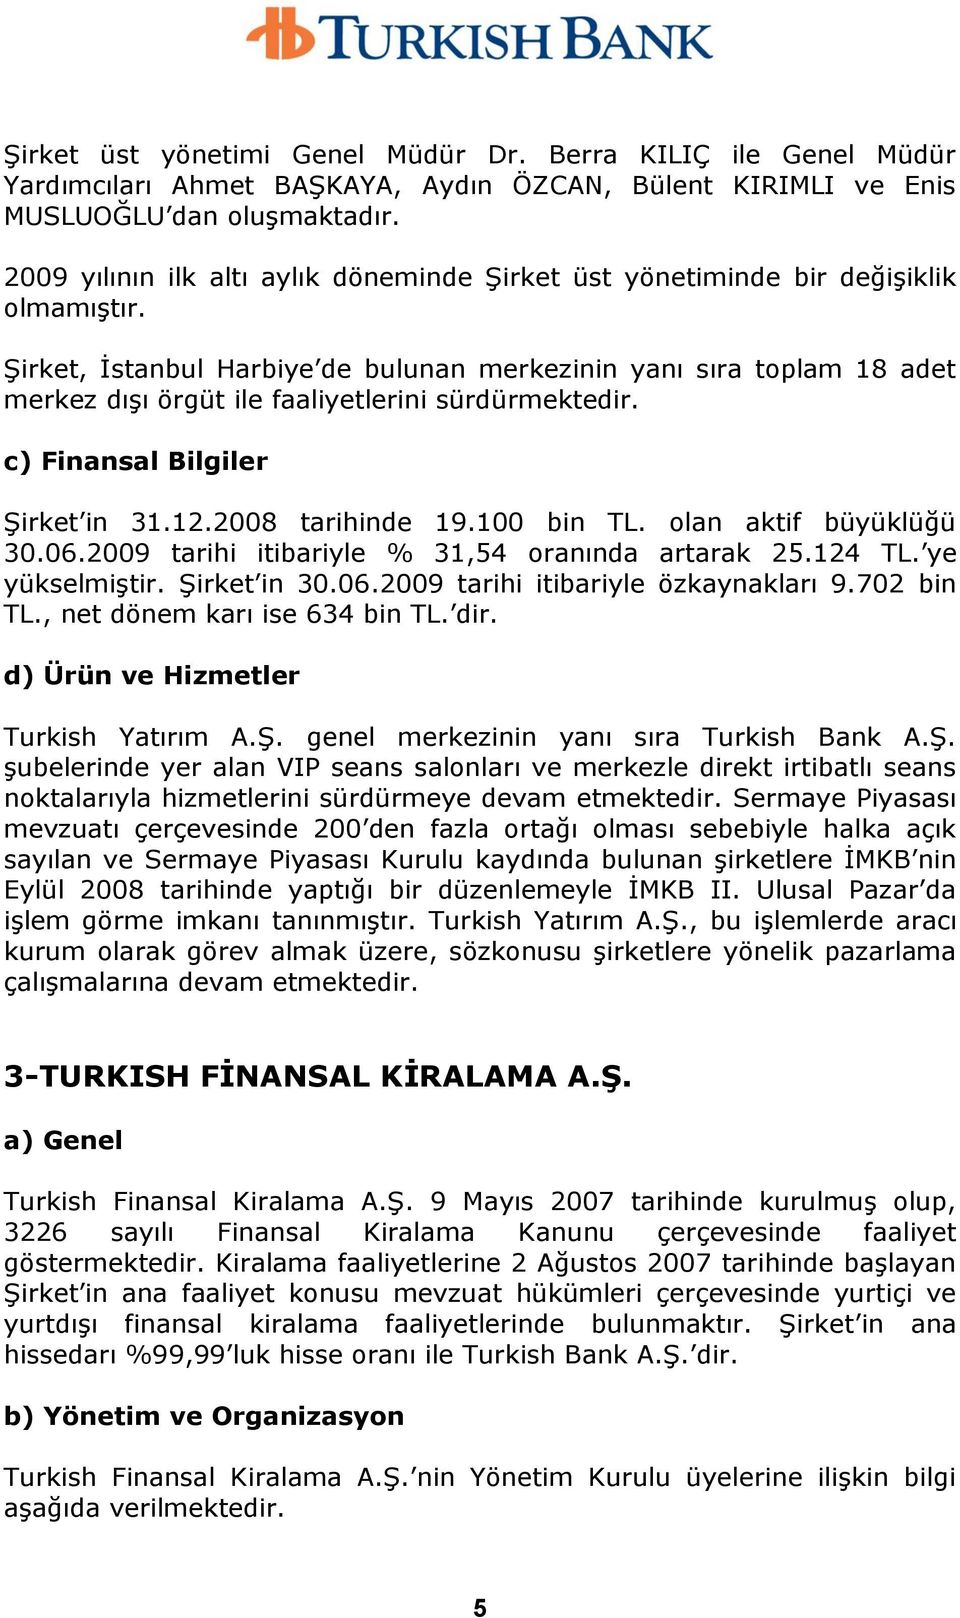 ġirket, Ġstanbul Harbiye de bulunan merkezinin yanı sıra toplam 18 adet merkez dıģı örgüt ile faaliyetlerini sürdürmektedir. c) Finansal Bilgiler ġirket in 31.12.2008 tarihinde 19.100 bin TL.